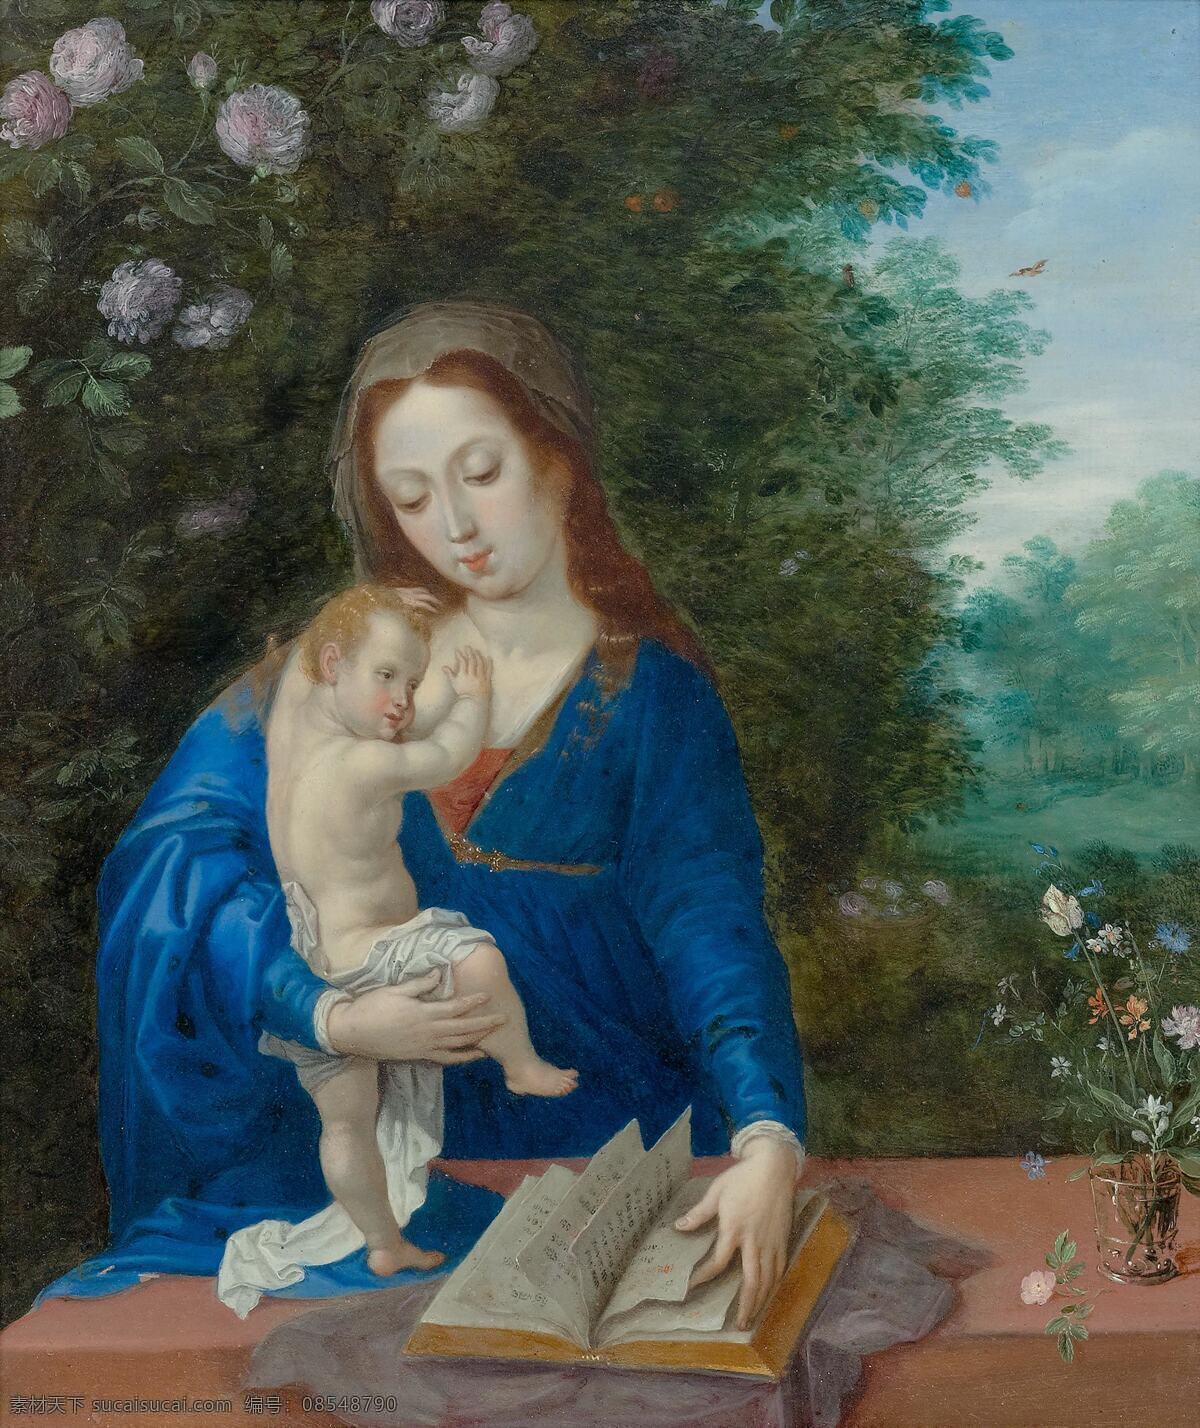 伊甸园 中 圣母 圣婴 圣经故事 圣玛丽娅 翻阅圣经 独子耶稣 玩耍 宗教油画 古典油画 油画 文化艺术 绘画书法